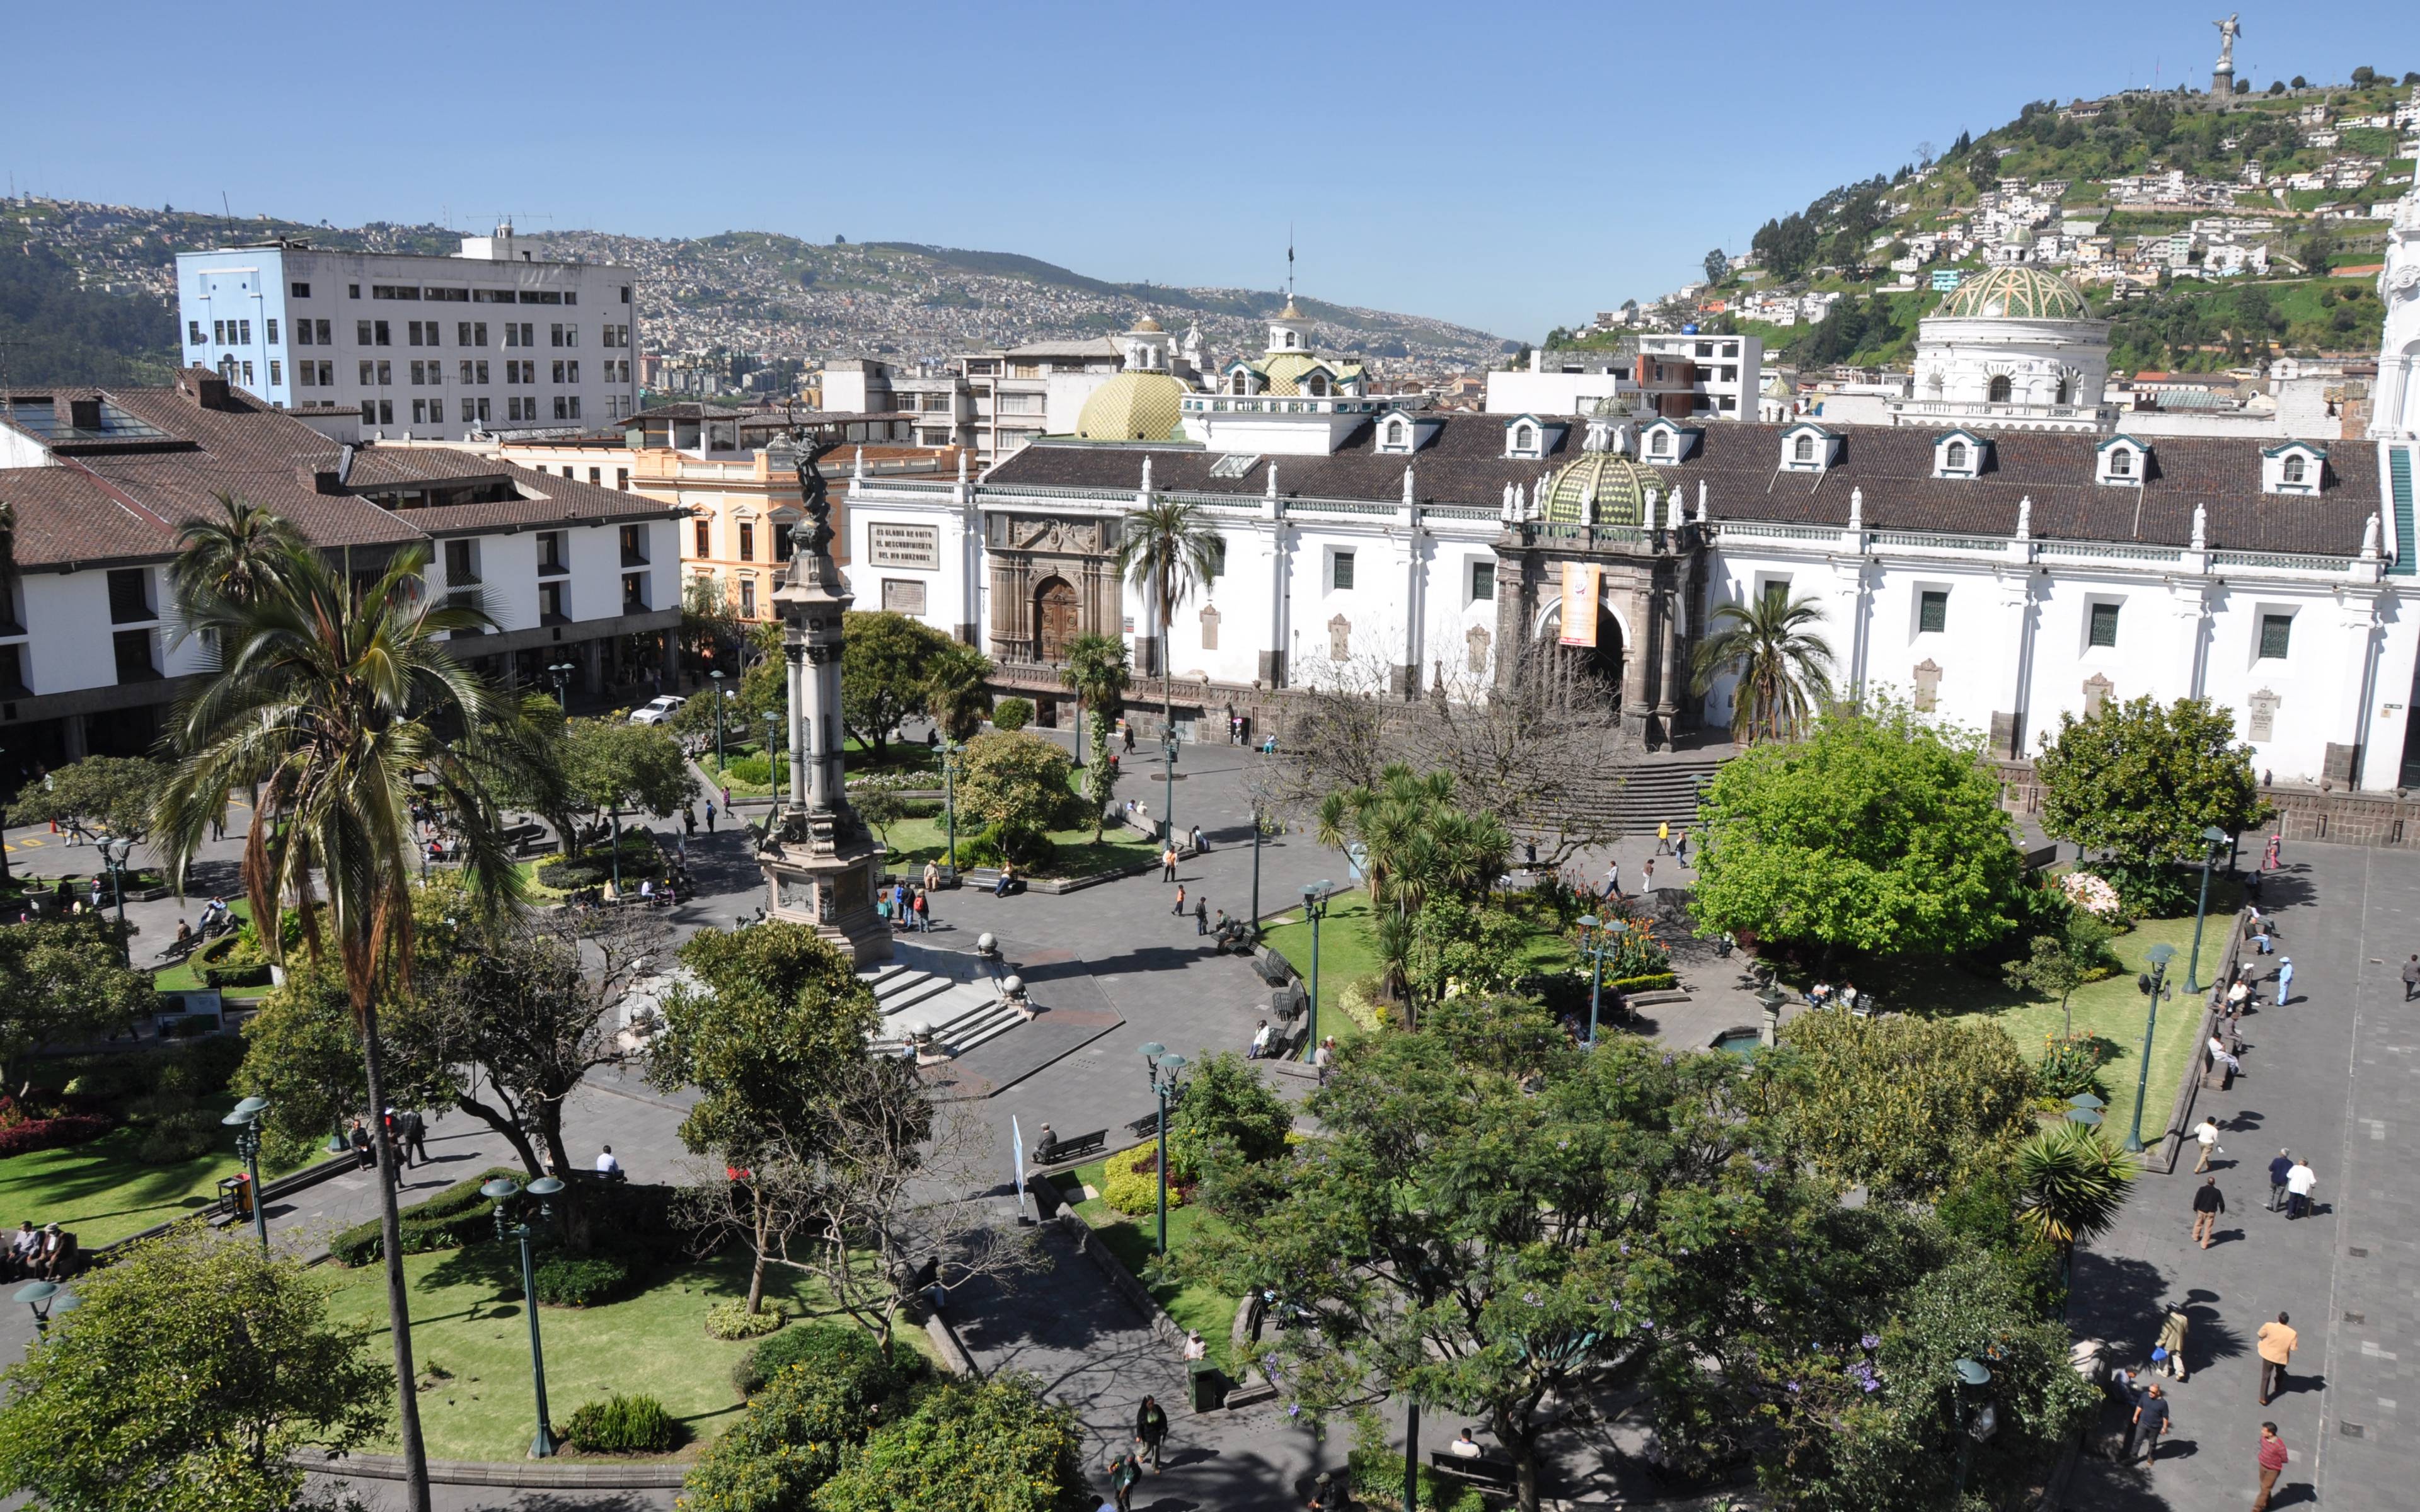 Ankunft in Quito, der Hauptstadt in der Mitte der Welt